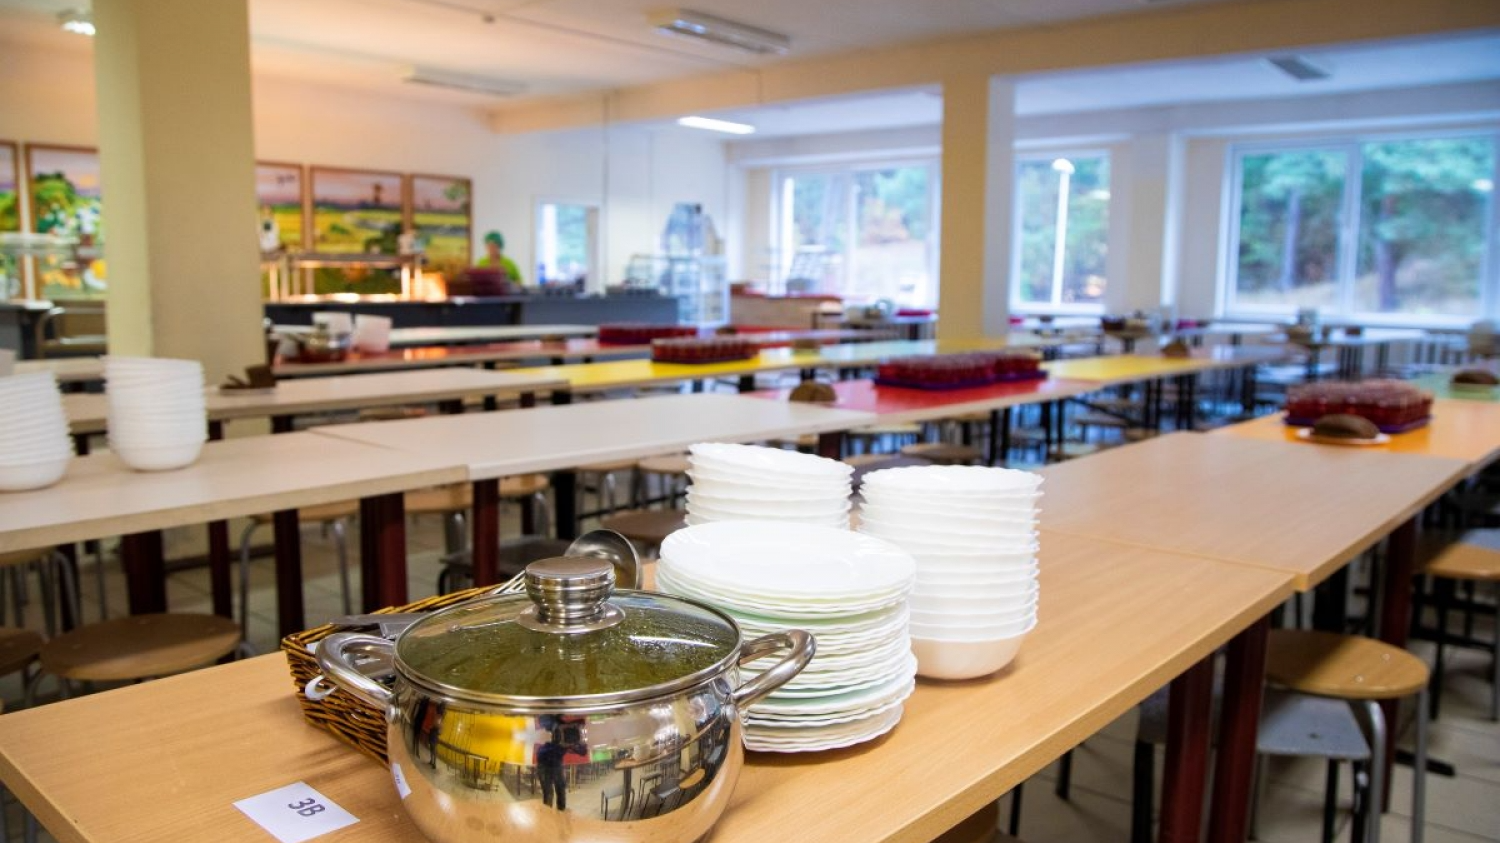 Rīgas pašvaldība iecerējusi kompensēt izglītojamo ēdināšanu 100% apmērā plašam sociālo grupu lokam